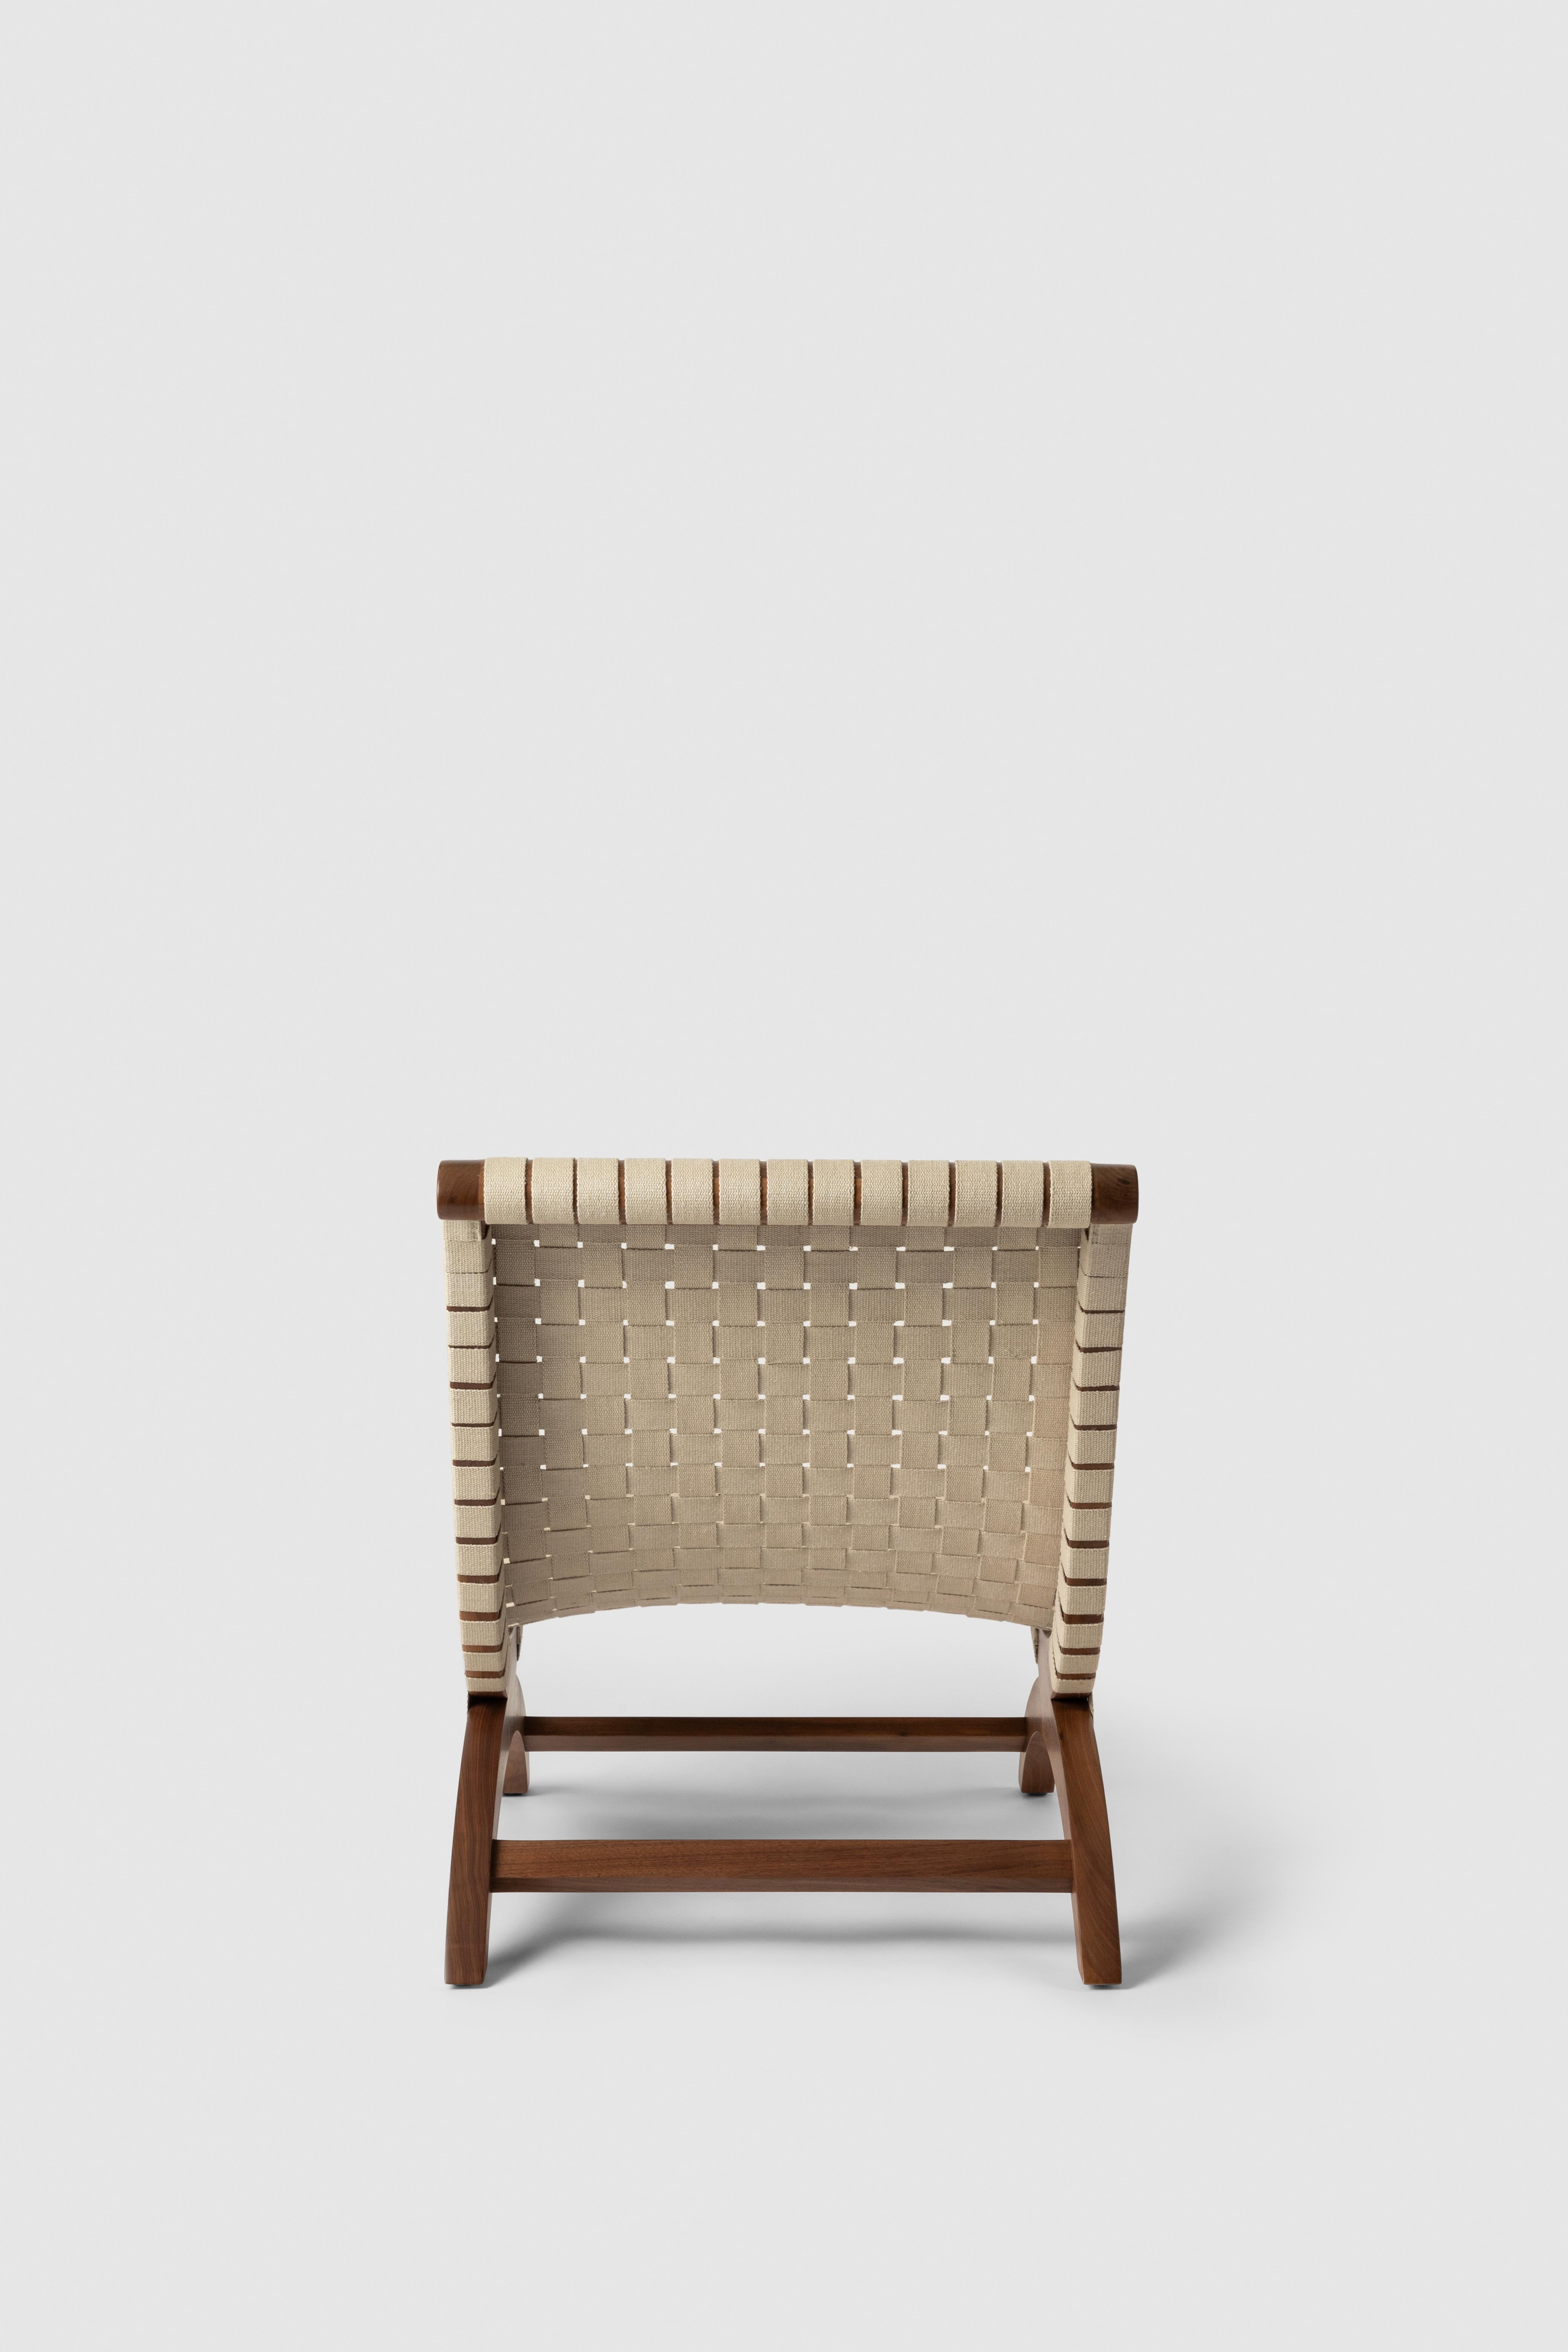 Clara Porset's Mexican Walnut & Hemp Butaque Chair, lizenzierte Neuauflage von Luteca (Mexikanisch) im Angebot